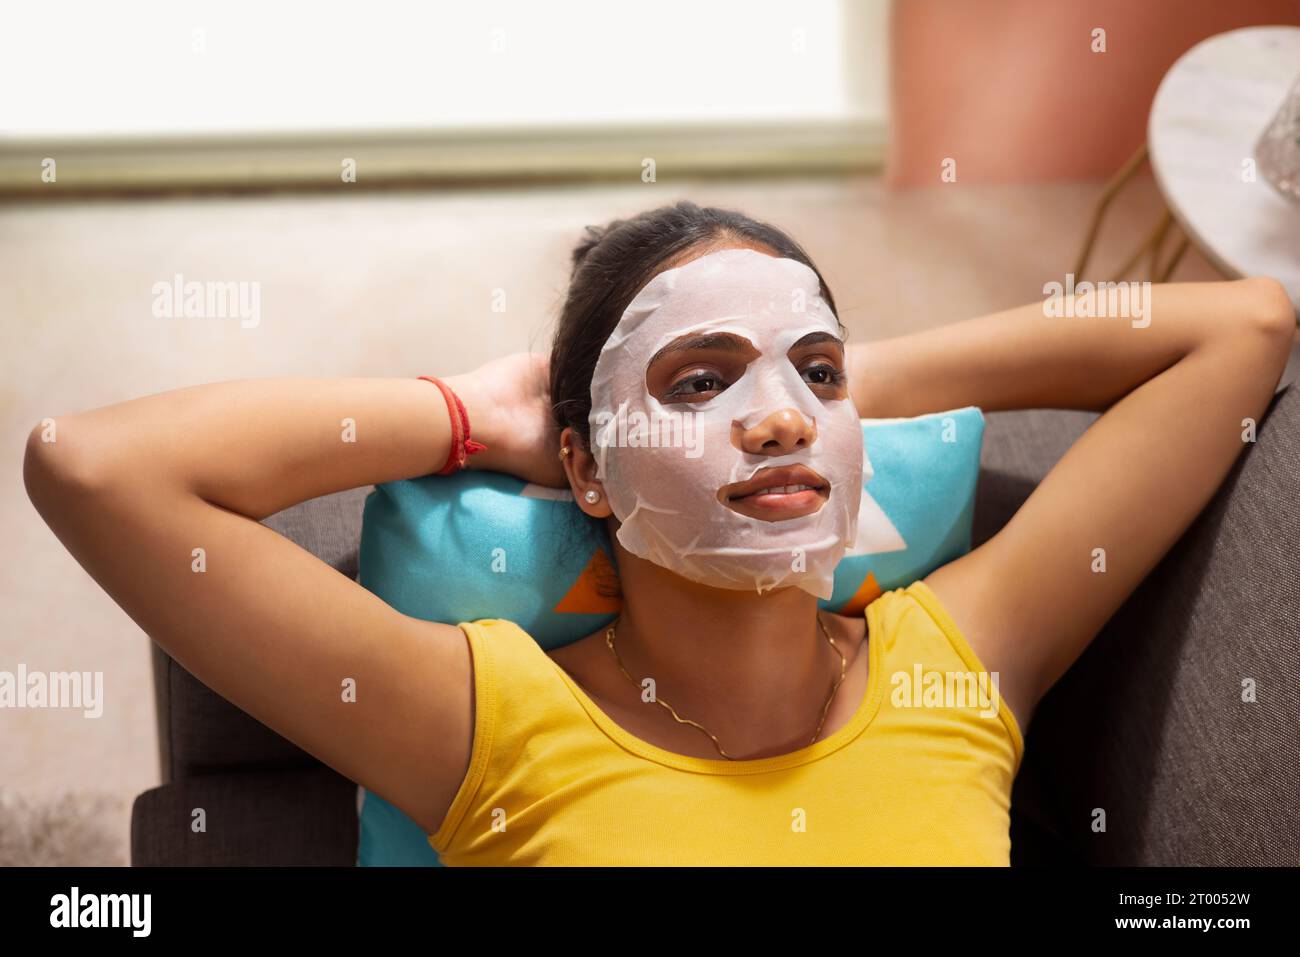 Vue d'angle de dessus de la jeune femme avec masque facial relaxant sur le canapé Banque D'Images